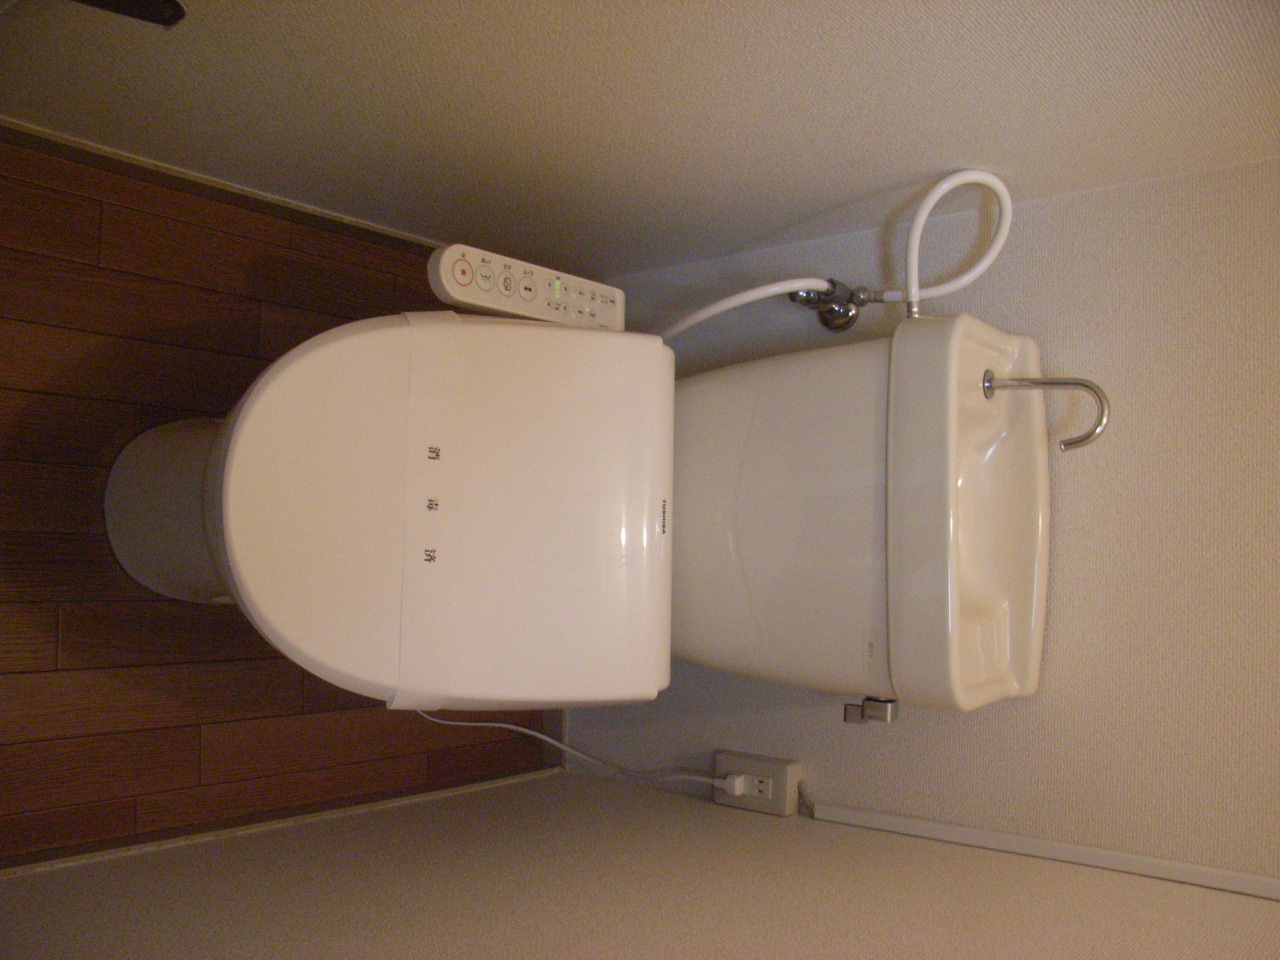 Toilet. Warm water washing toilet seat ・ Bidet